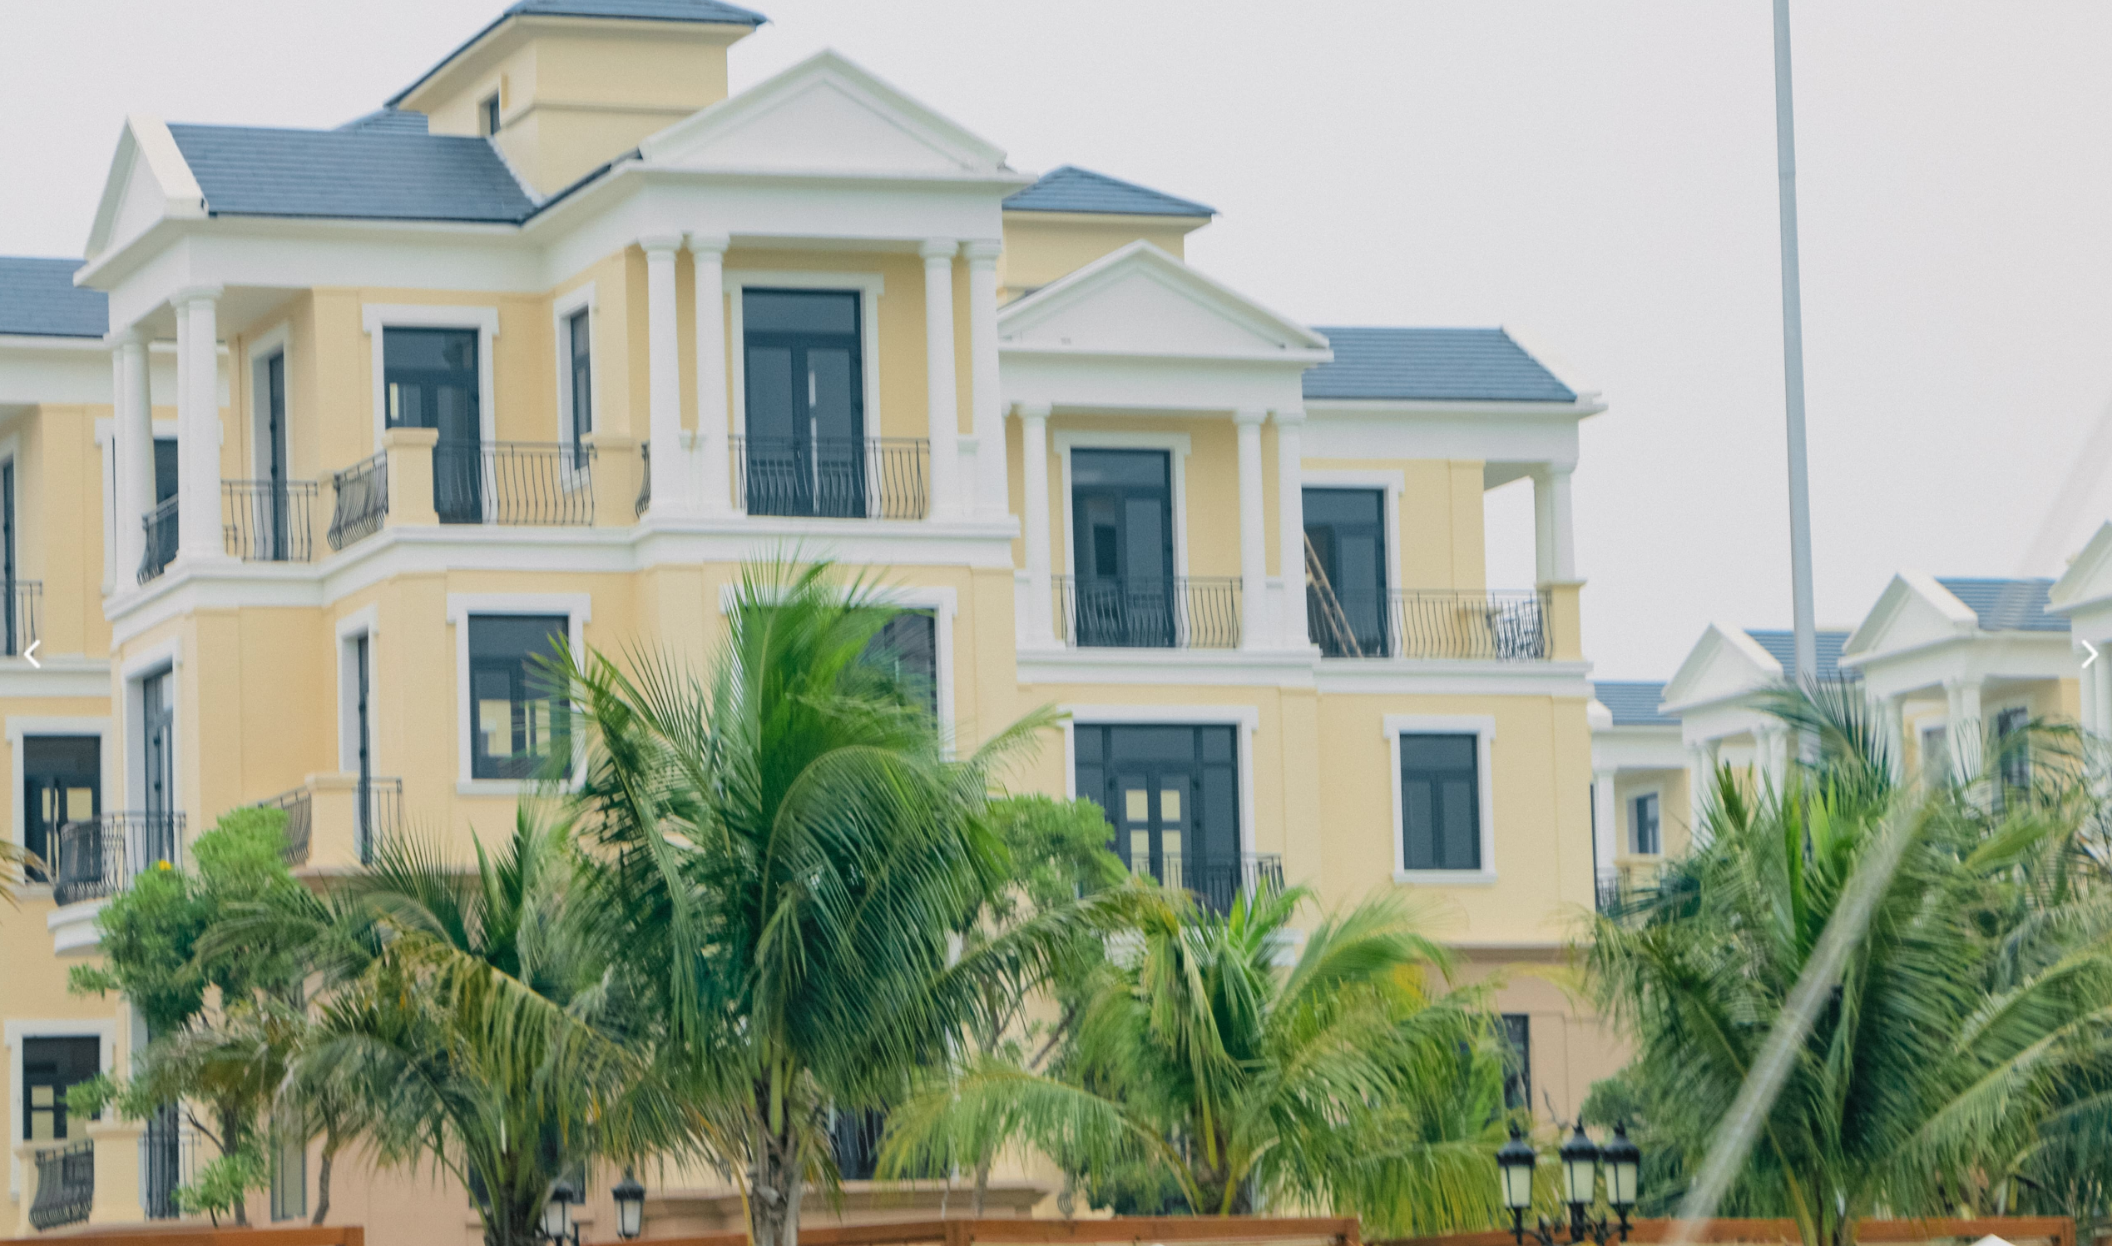 Cho thuê nhà liền kề dự án Vinhomes Ocean Park 2 phân khu Đảo Dừa 01. Diện tích 240m2 x 3,5 tầng nổi, bàn giao nguyên bản chủ đầu tư, giá thuê thương lượng.